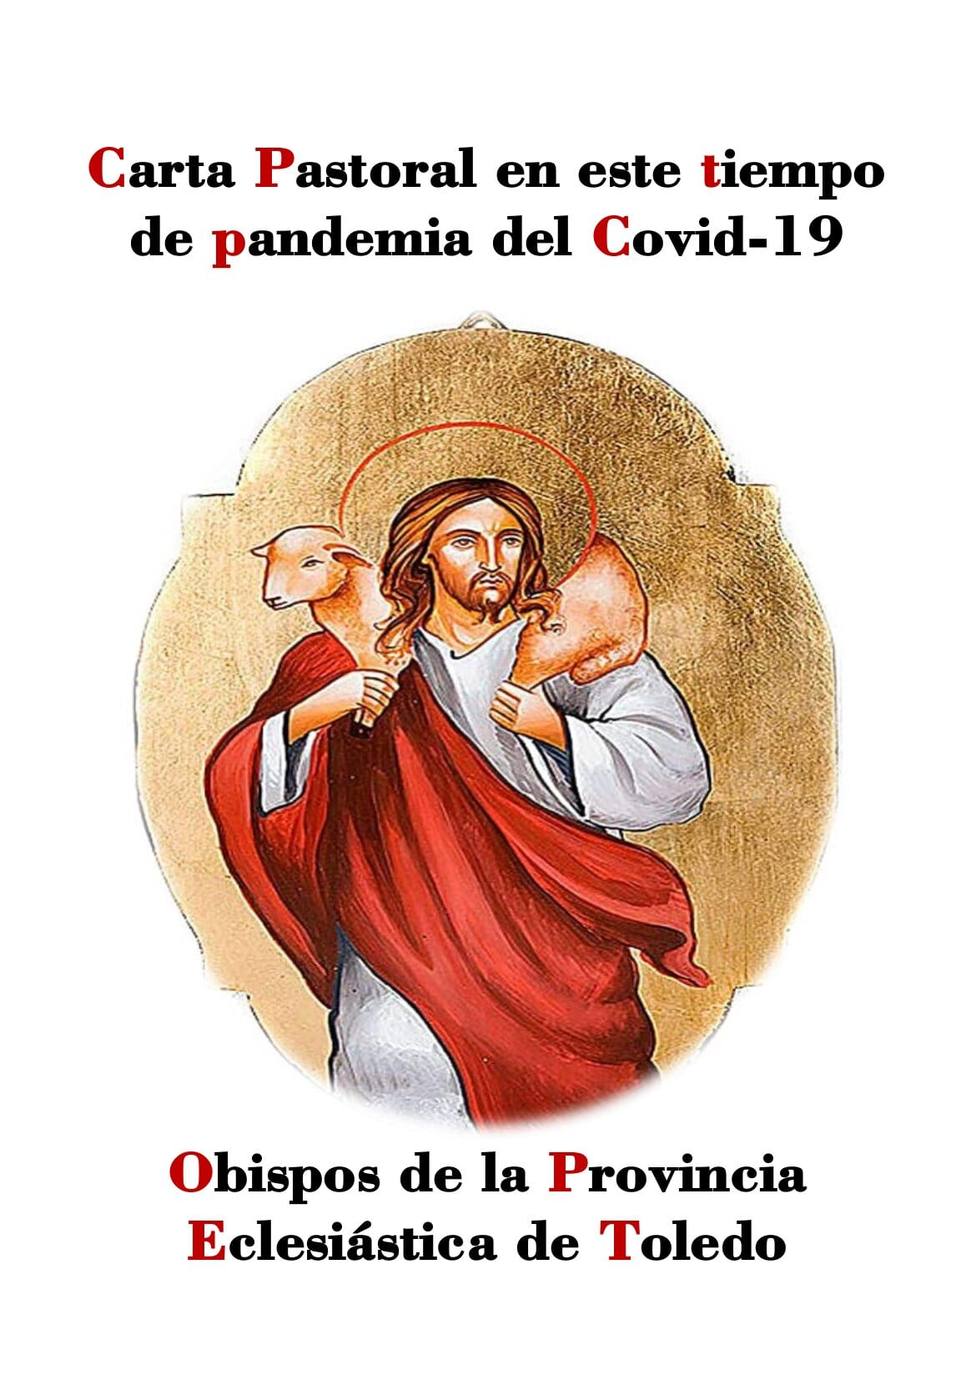 Pastoral de los Obispos Castellano-Manchegos